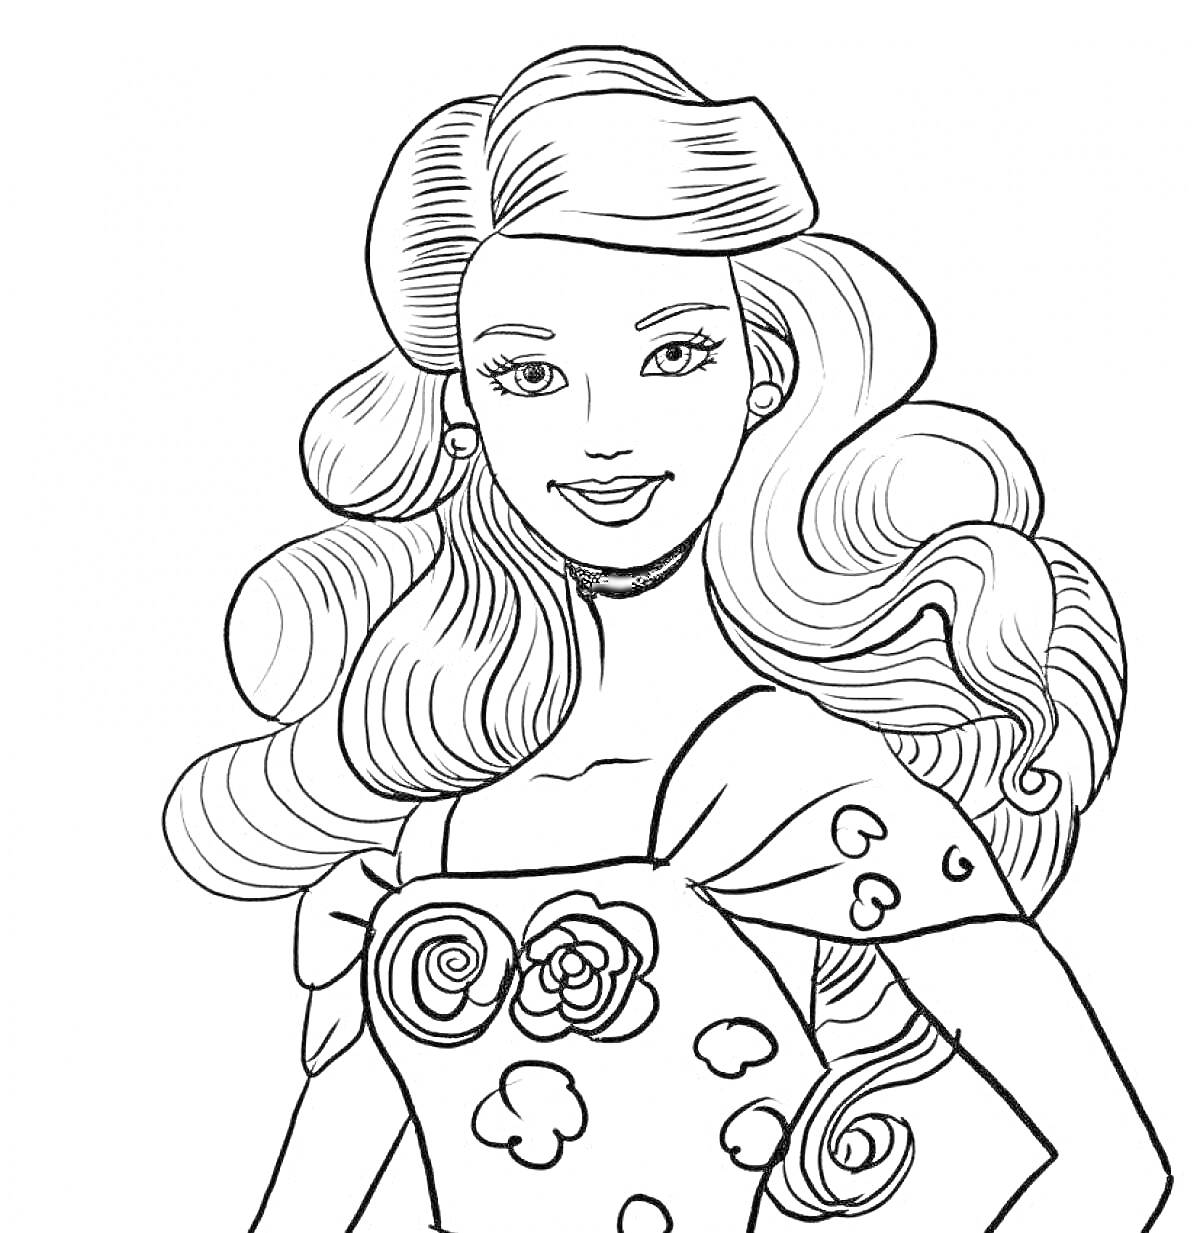 Раскраска Барби с длинными волнистыми волосами, в платье с сердечками и цветами